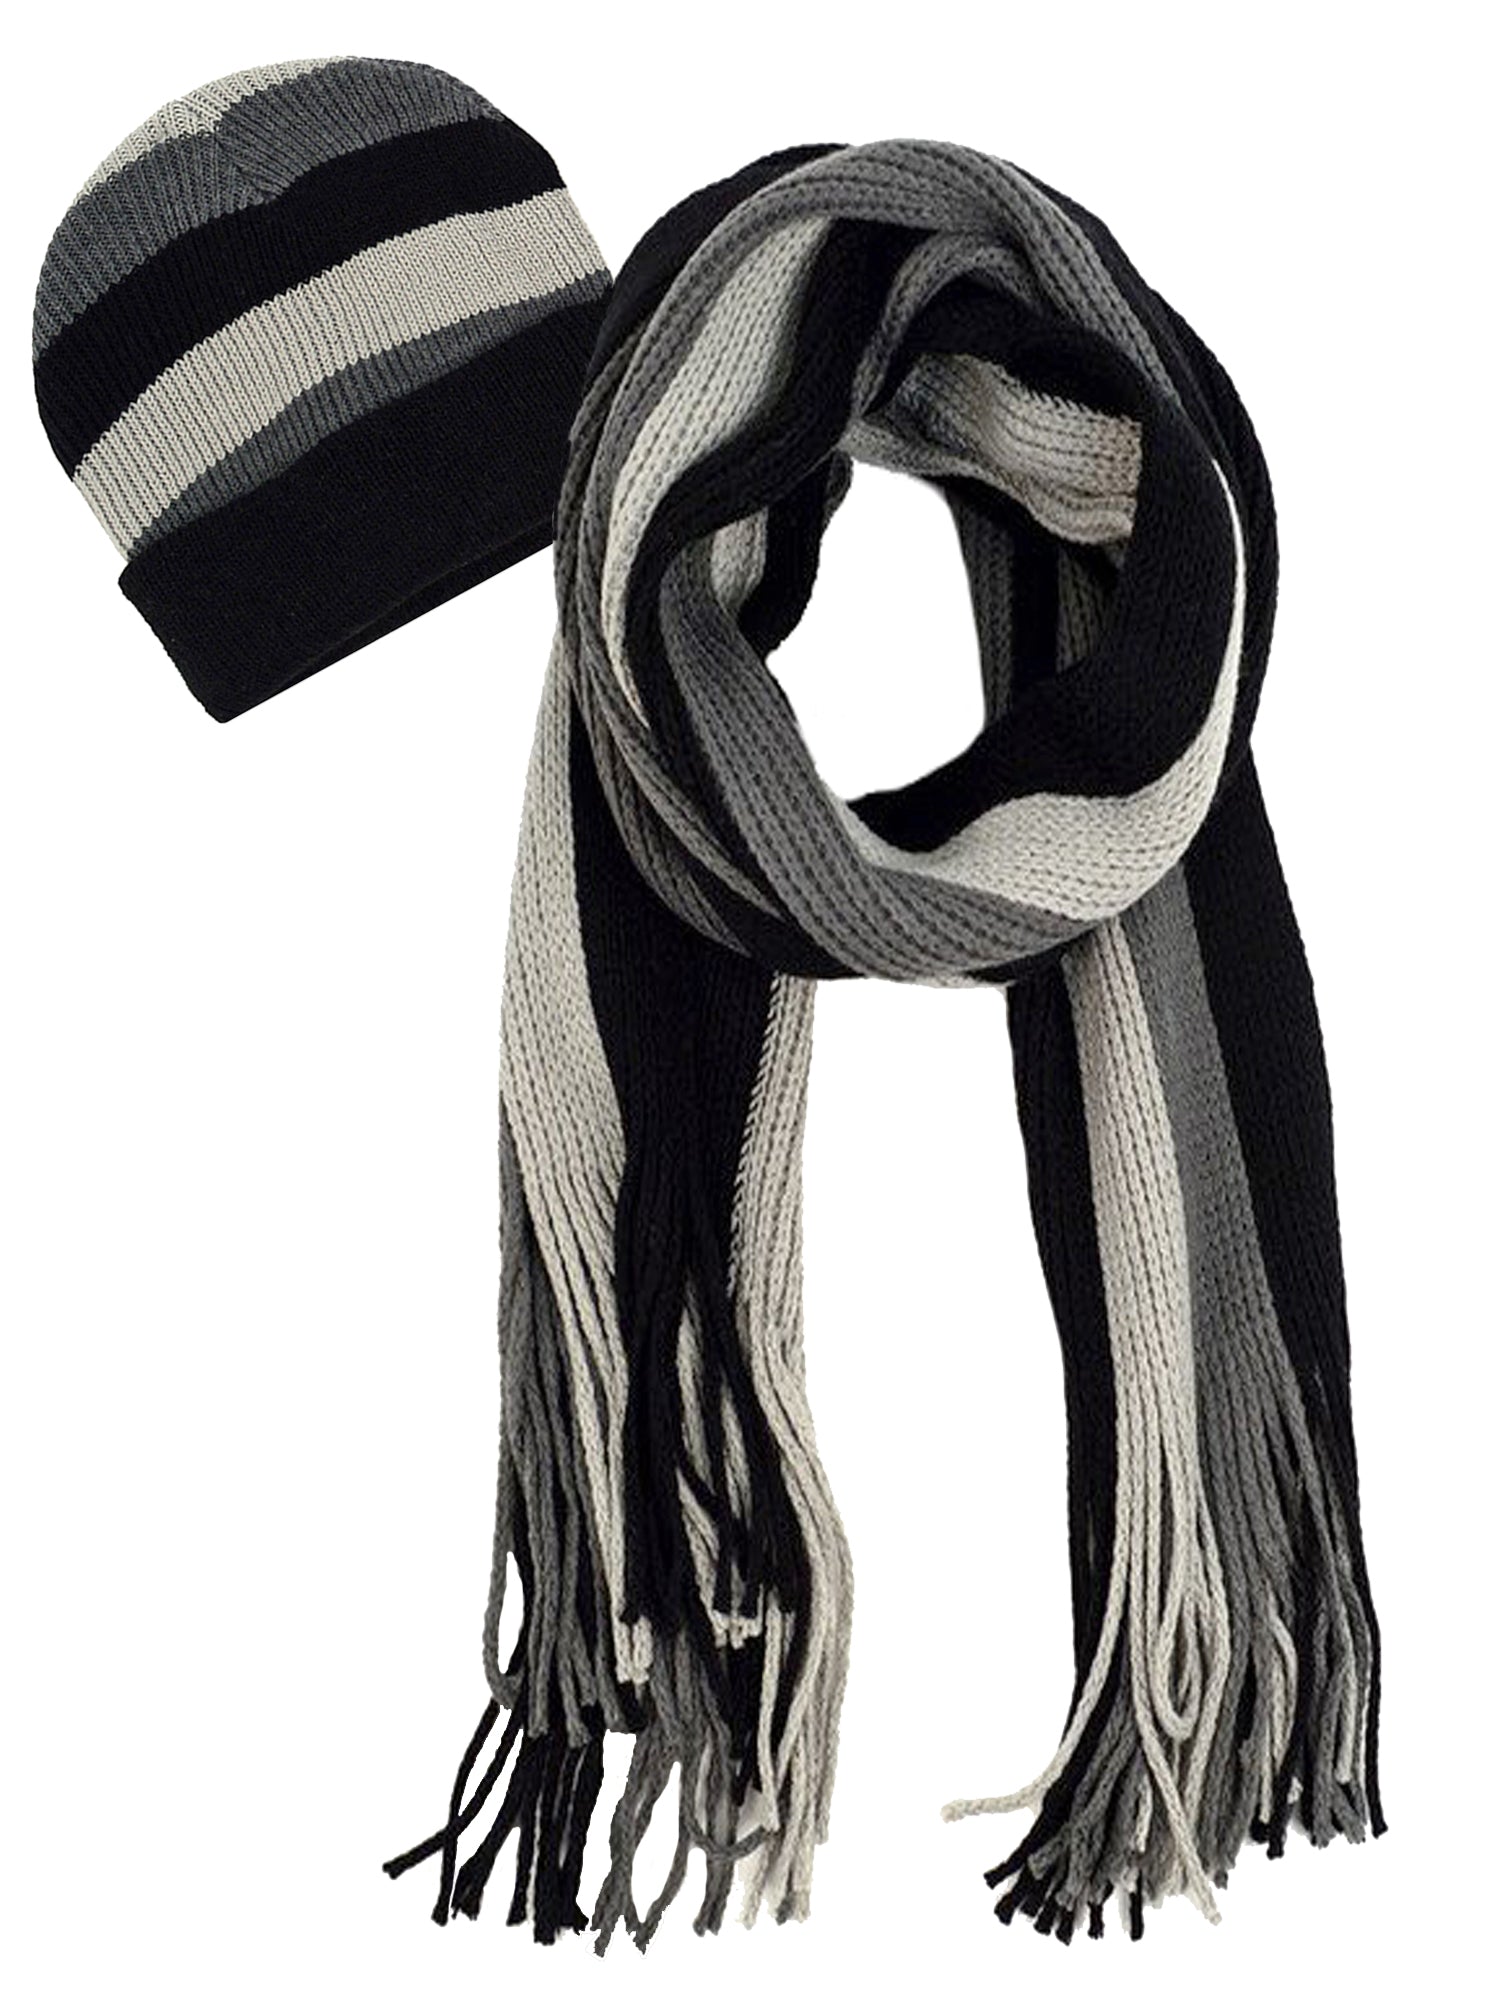 Vittoria Luxurious Hooded Scarf in Double Knit Velvet & Merino Blend - Black/Antique  Golden - Studio Myr